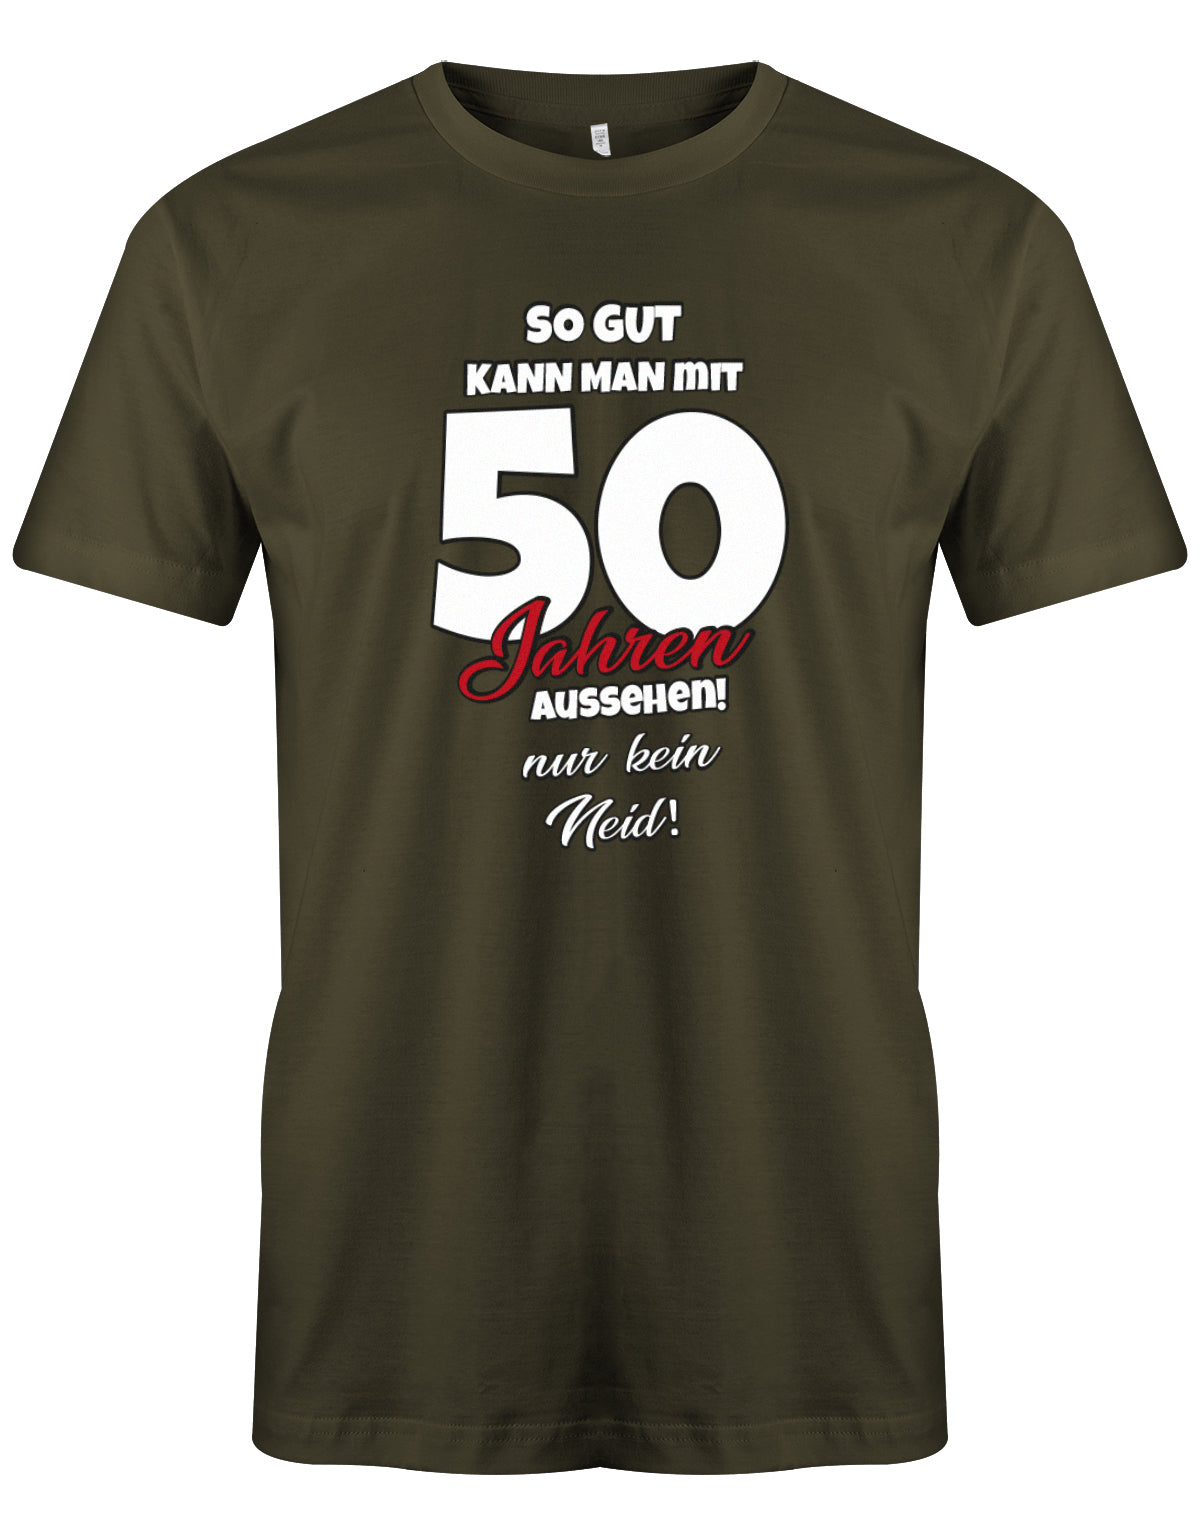 Lustiges T-Shirt zum 50 Geburtstag für den Mann Bedruckt mit So gut kann man mit 50 Jahren aussehen! Nur kein Neid! Army